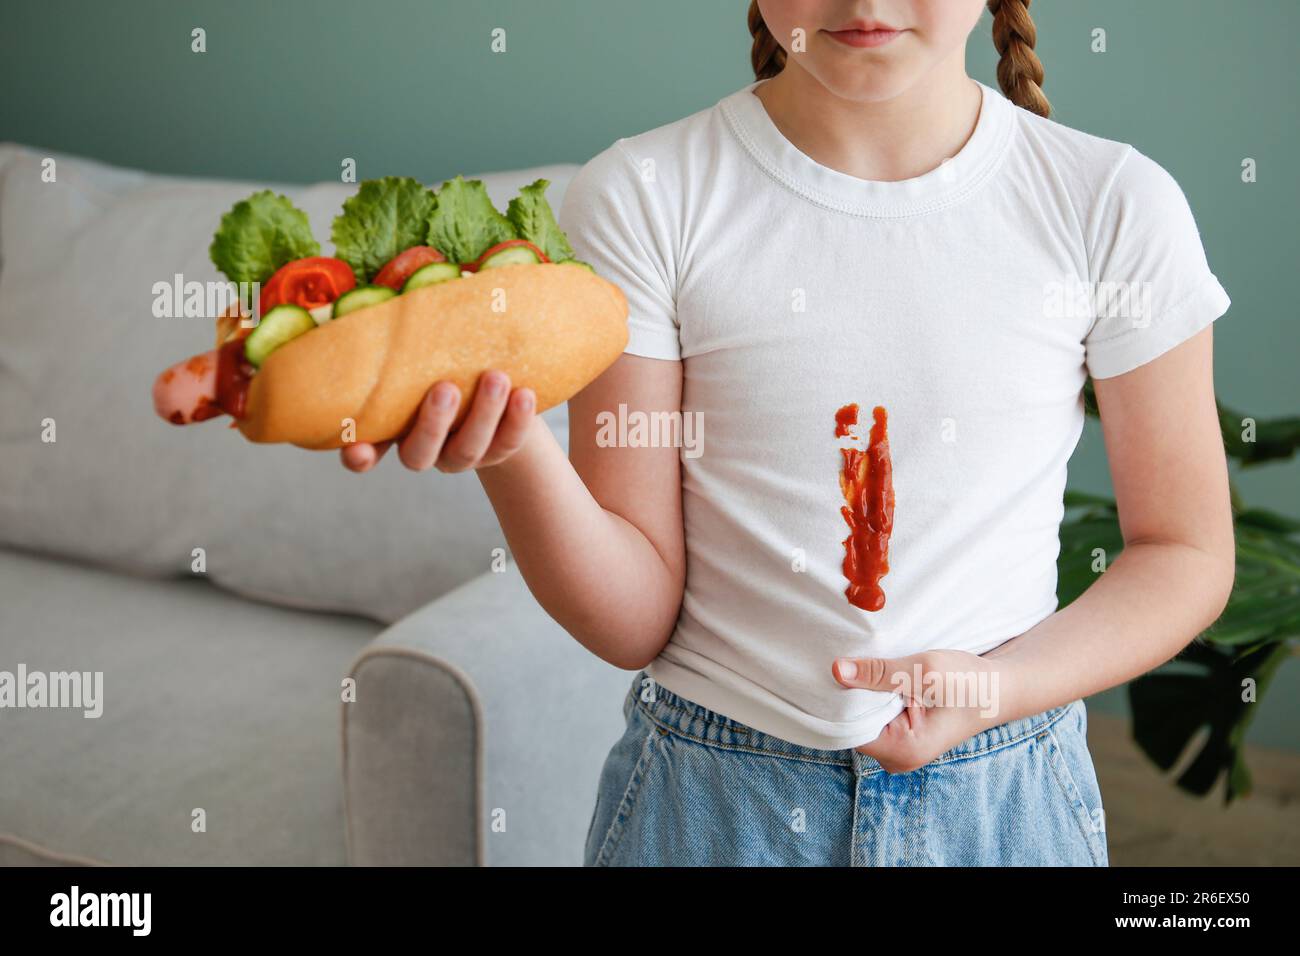 Das Kind hat seine Kleidung mit Ketchup befleckt. Ein Mädchen isst einen Hot Dog. Stockfoto